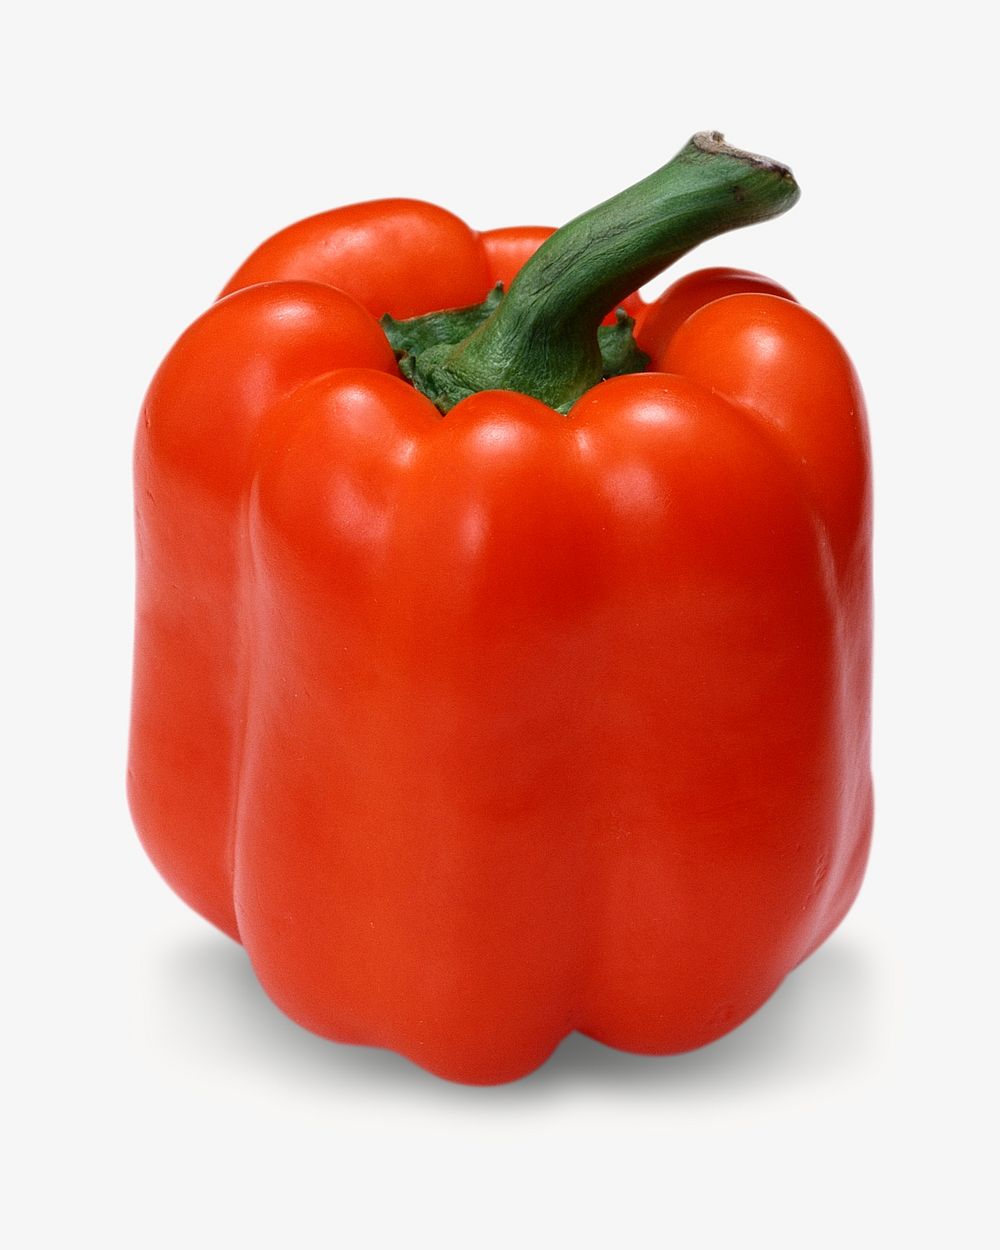 Bell pepper image on white